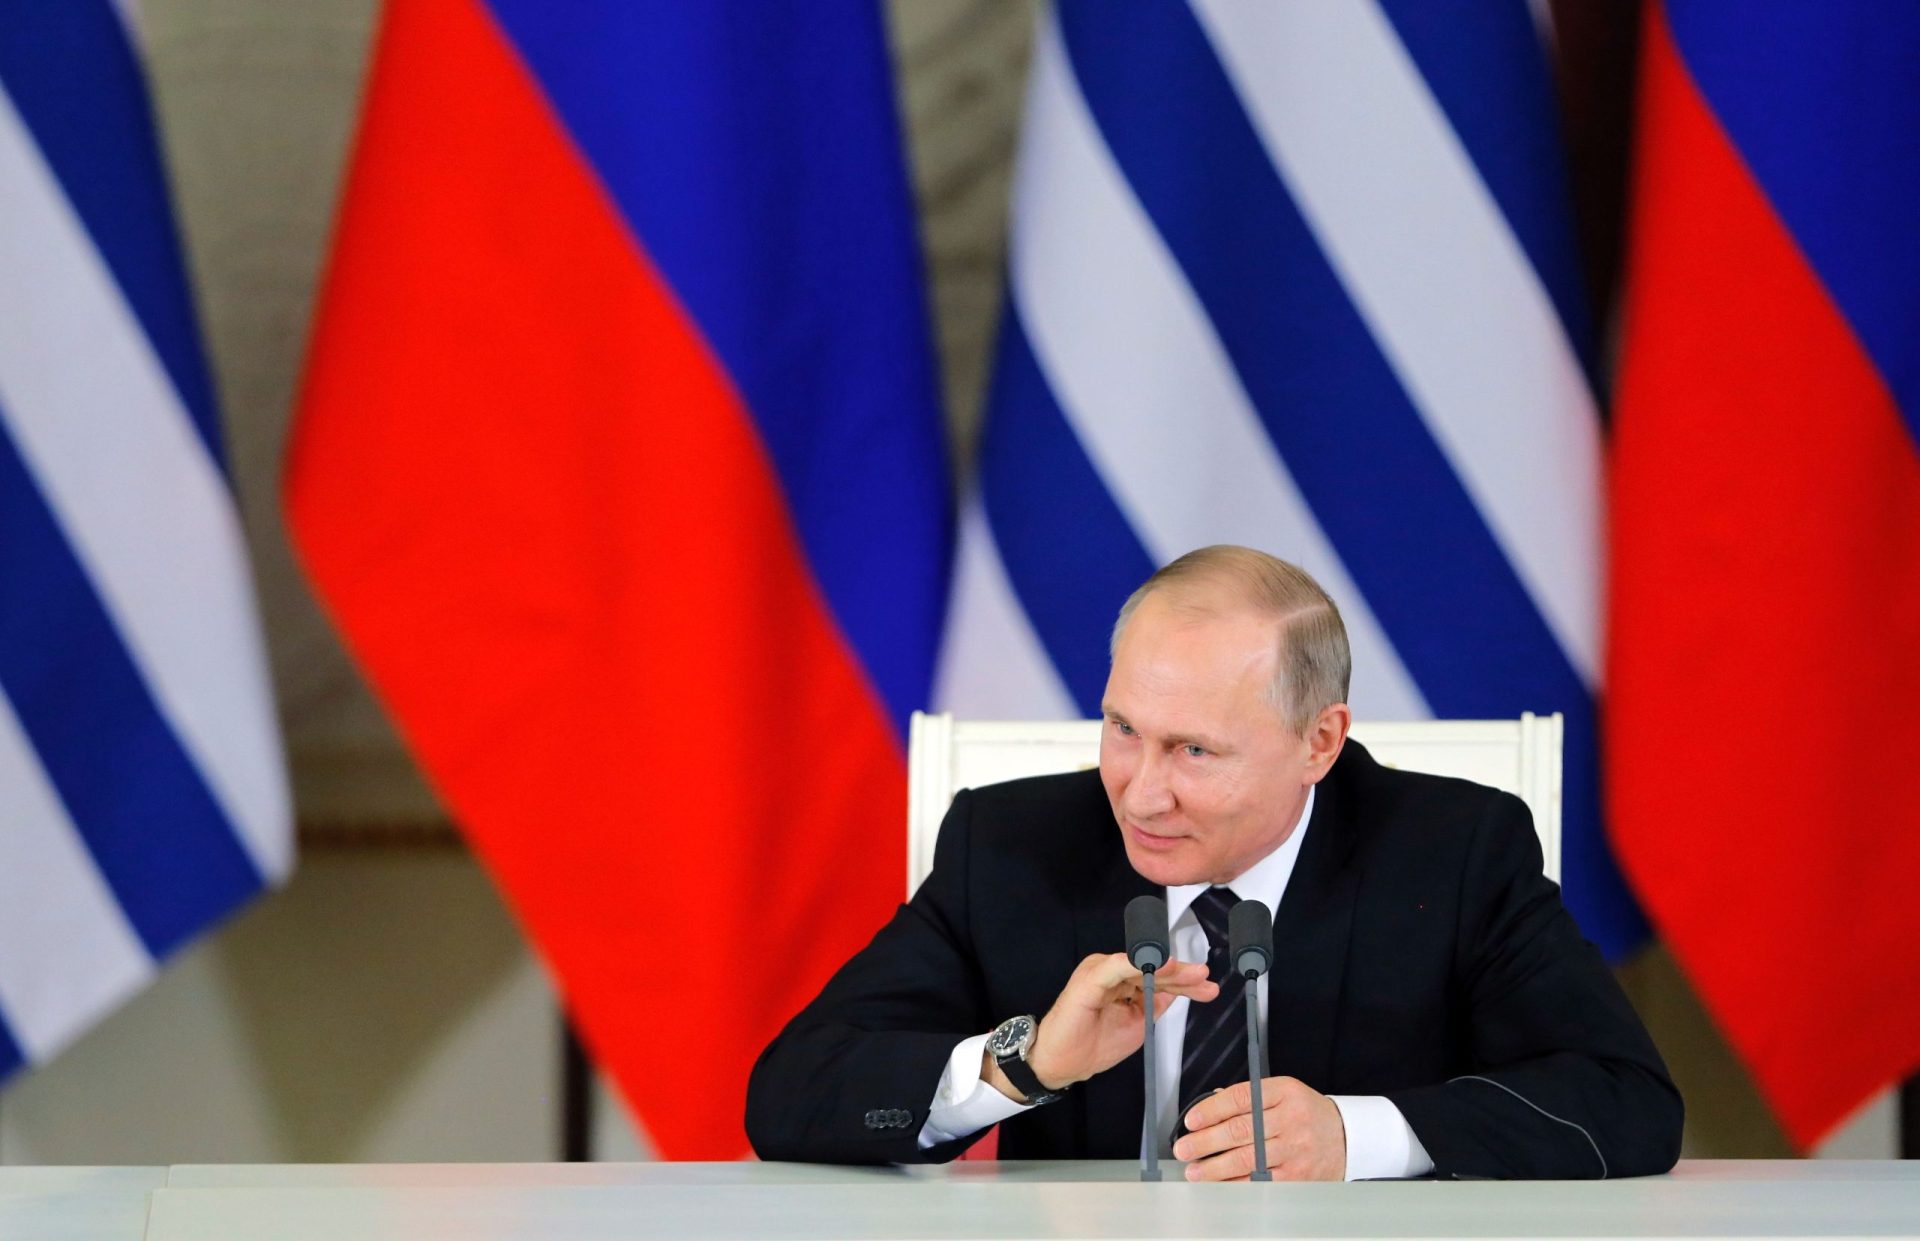 Putin reconhece documentos emitidos por rebeldes ucranianos